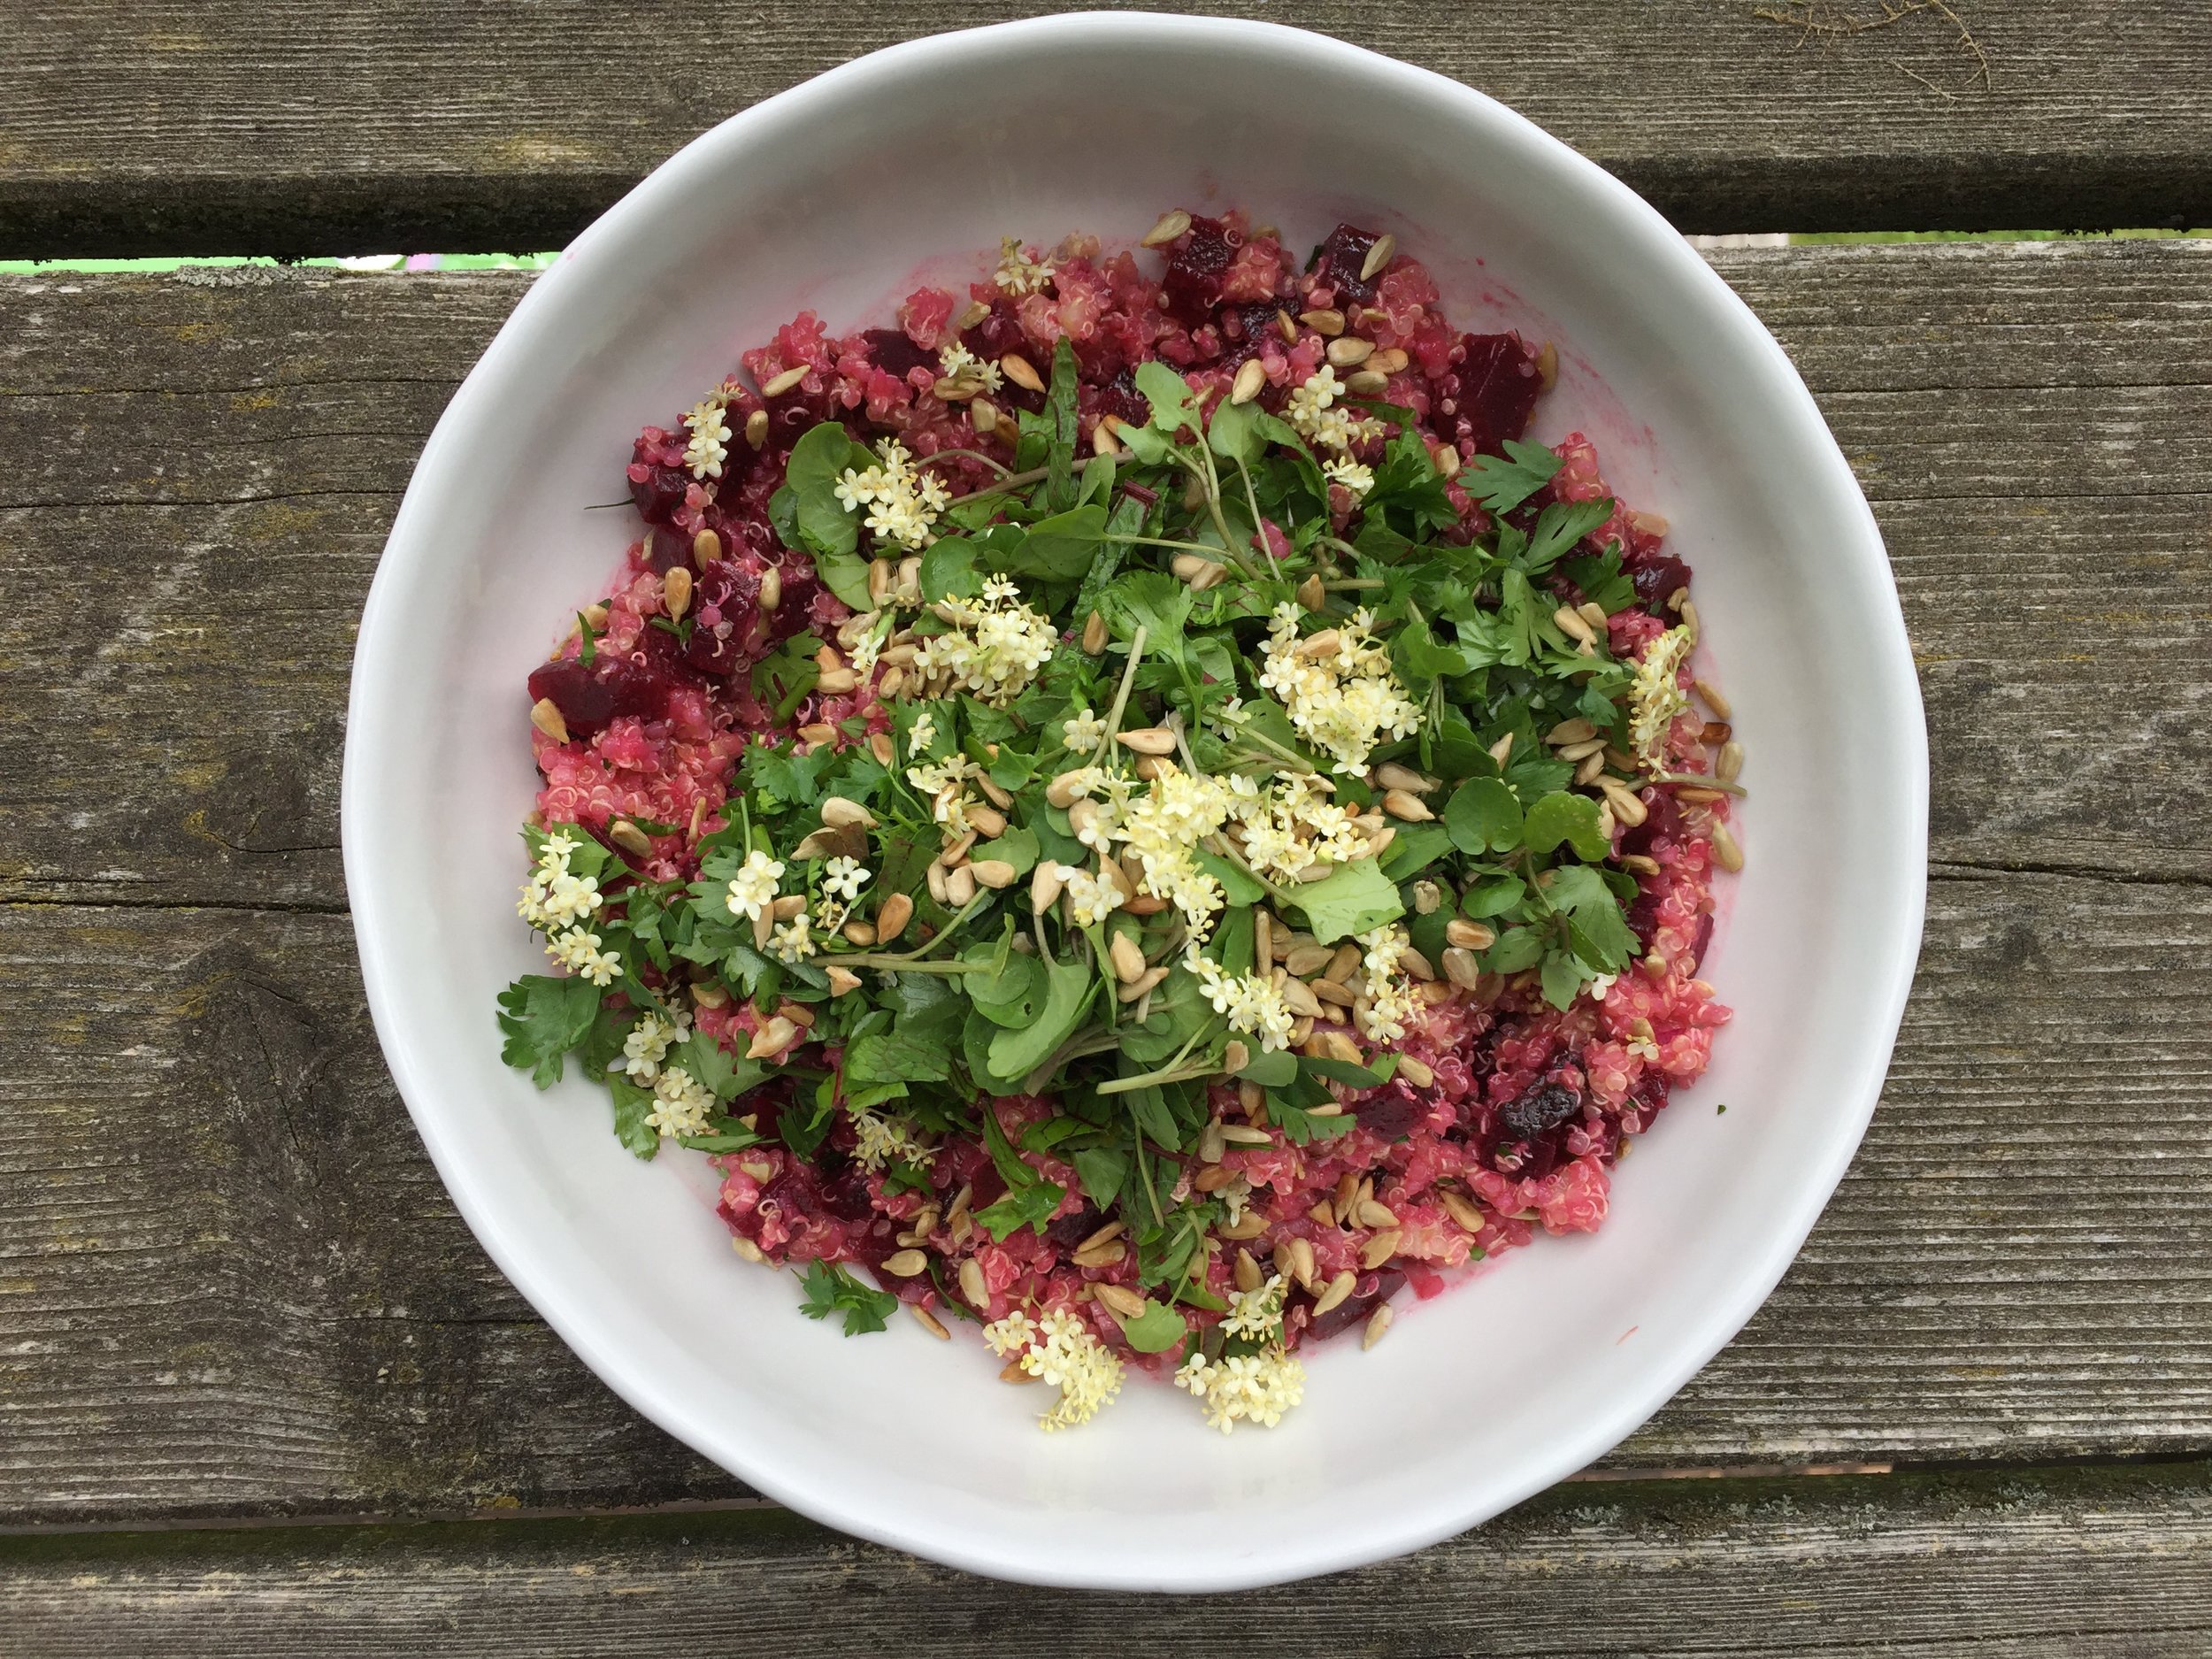 Quinoa-Rote Rüben-Salat — nina mandl tcm